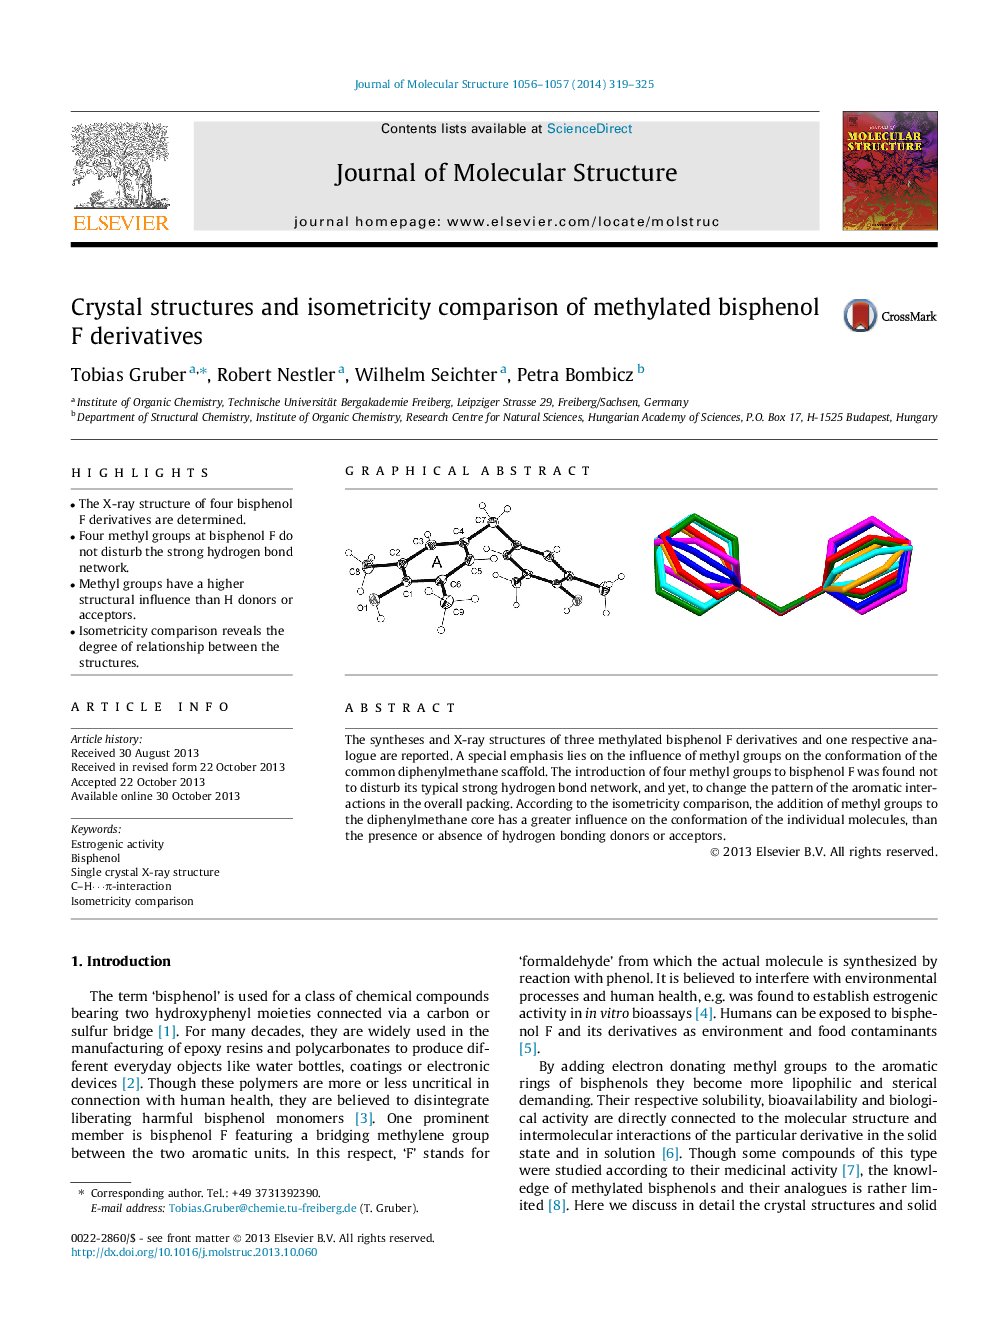 ساختارهای کریستالی و مقایسه ایزومتریک مشتقات بیسفنول متیل 